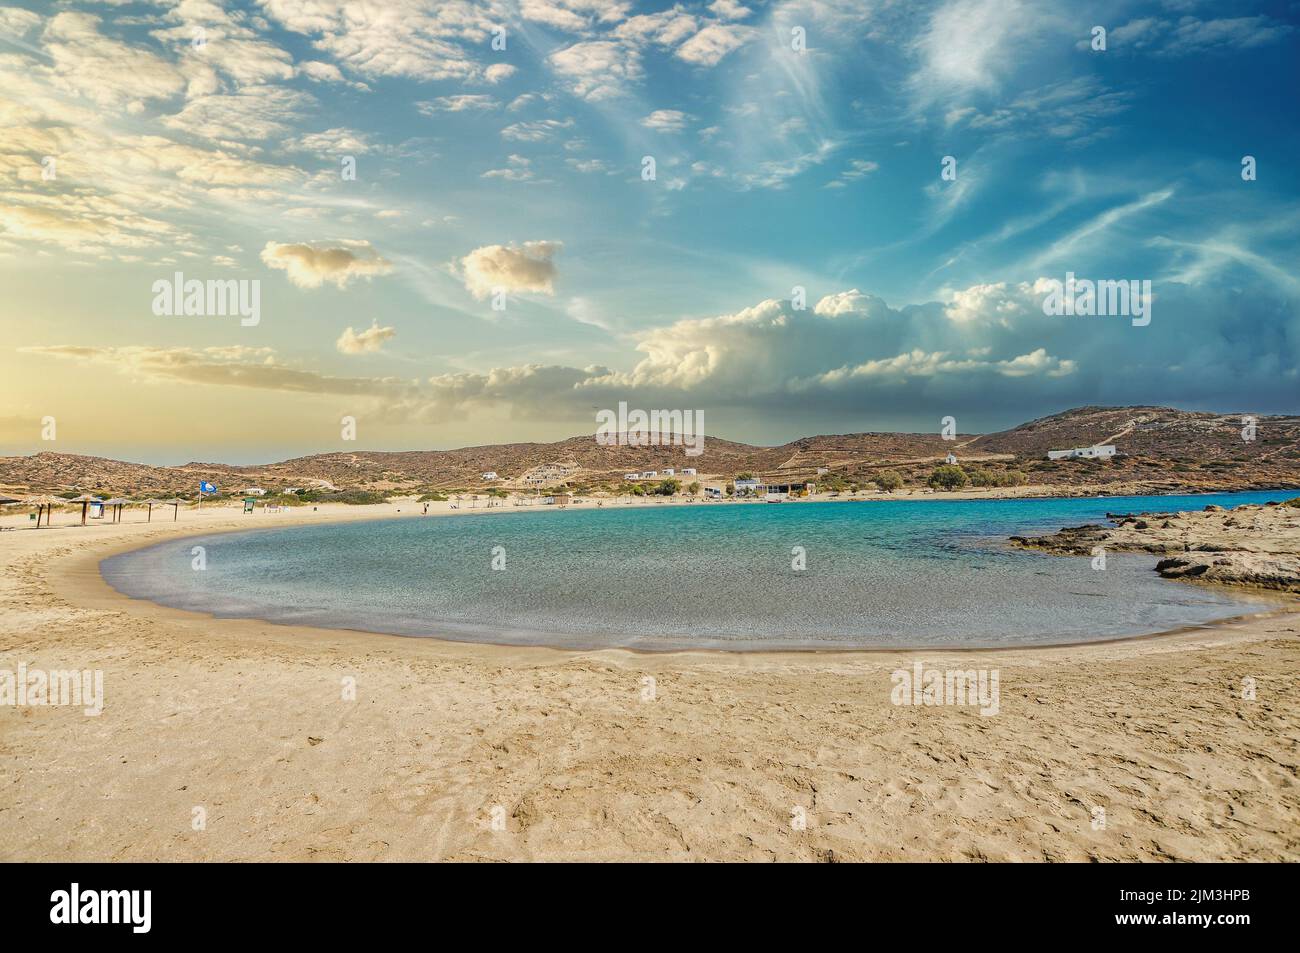 Griechenland, Insel iOS. 19. September 2010: Der berühmte Strand von Manganari auf der kykladischen Insel iOS in Griechenland Stockfoto